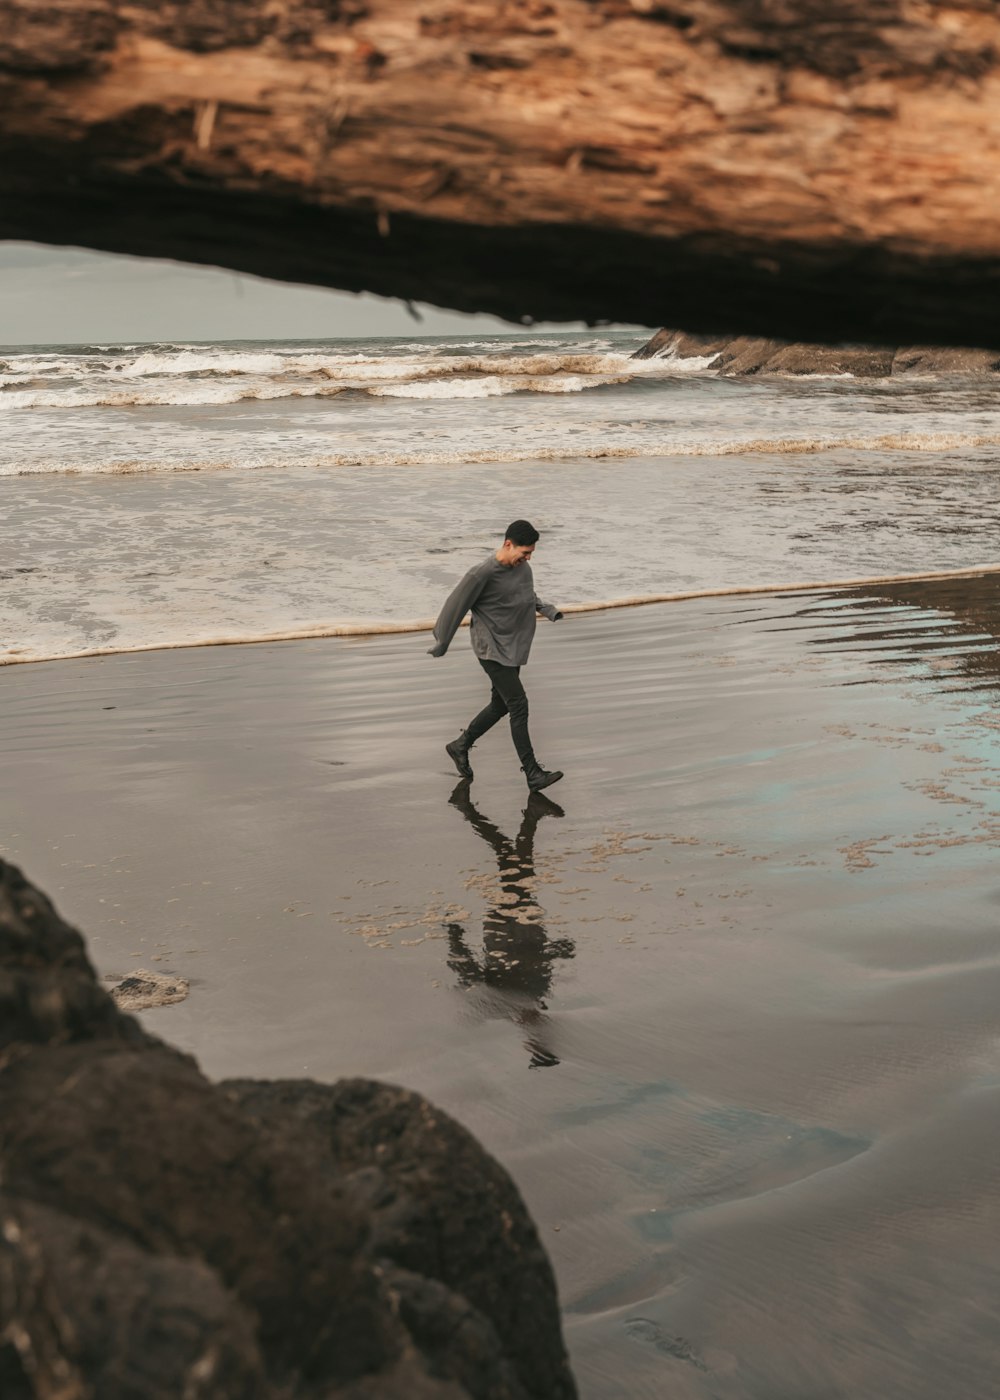 회색 재킷과 검은 바지를 입은 남자가 낮 동안 해변을 걷고 있다